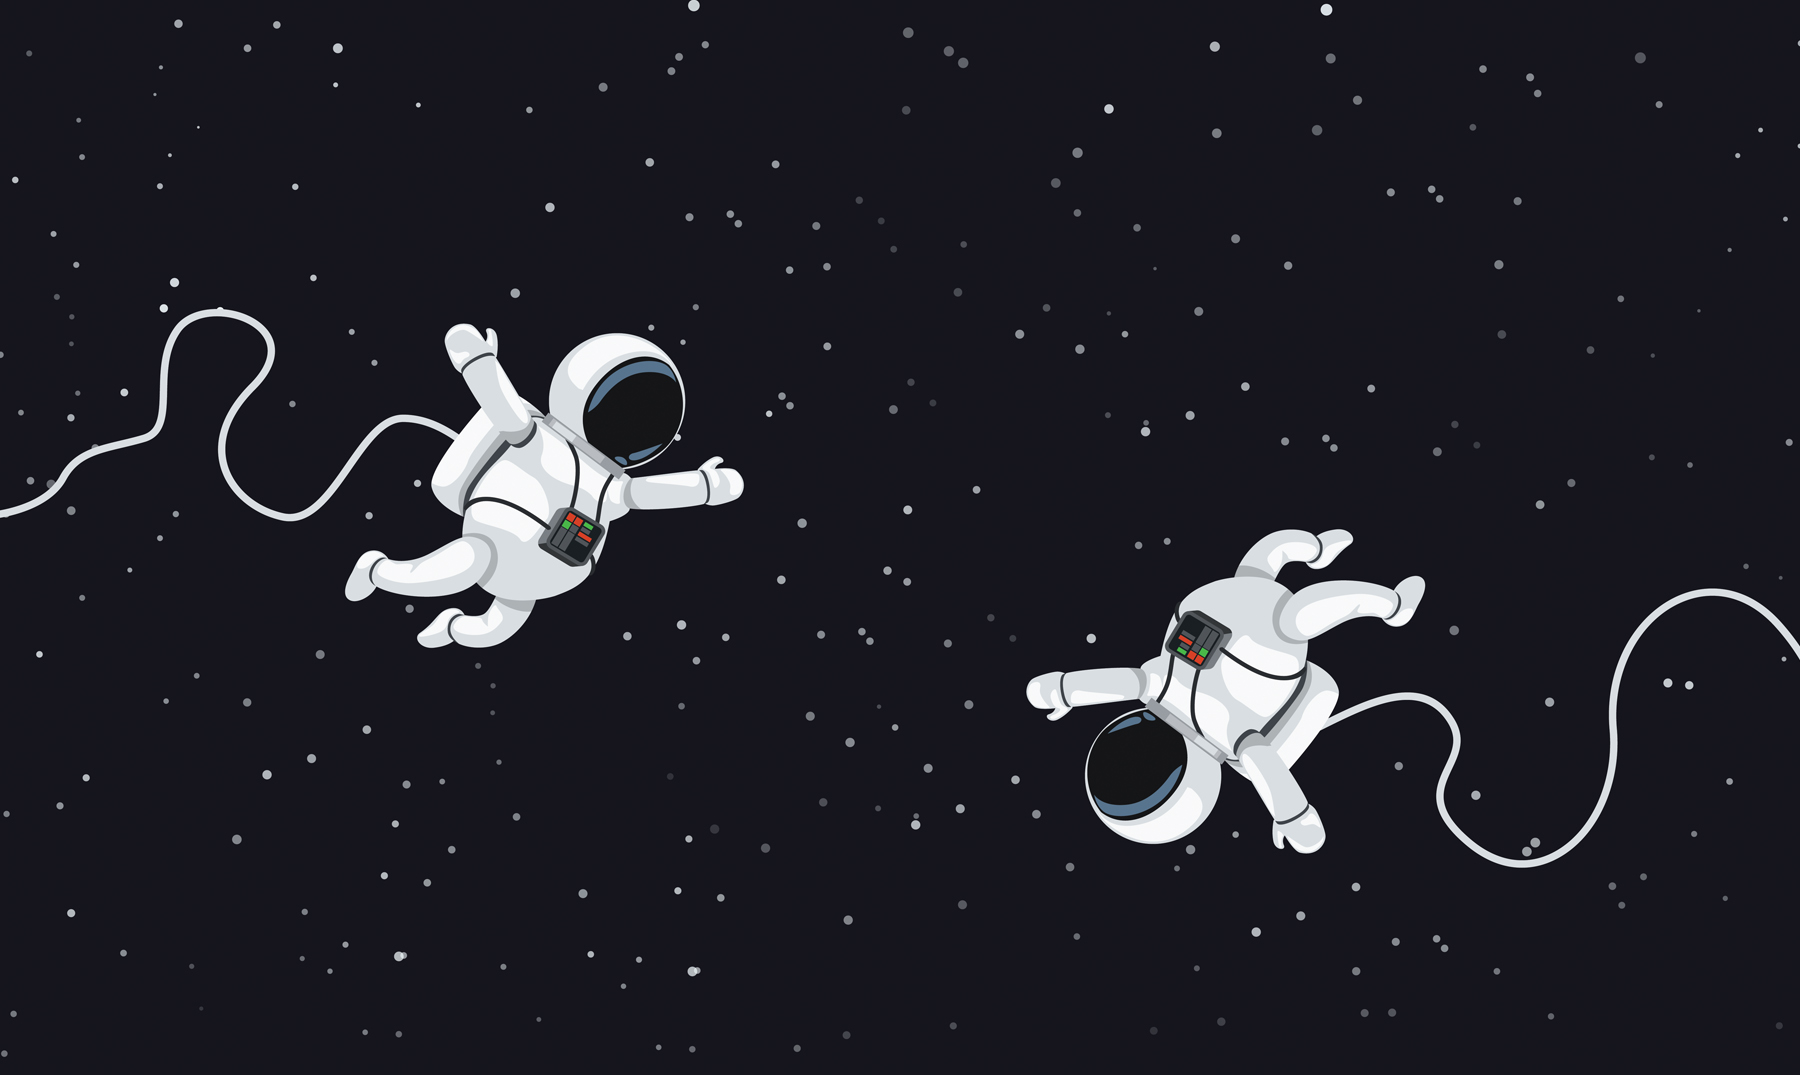 В темном небе звезды светят космонавт летит. Космонавт улетает в космос. Два Космонавта. Макет космонавт в космосе. Космонавт парит в космосе.